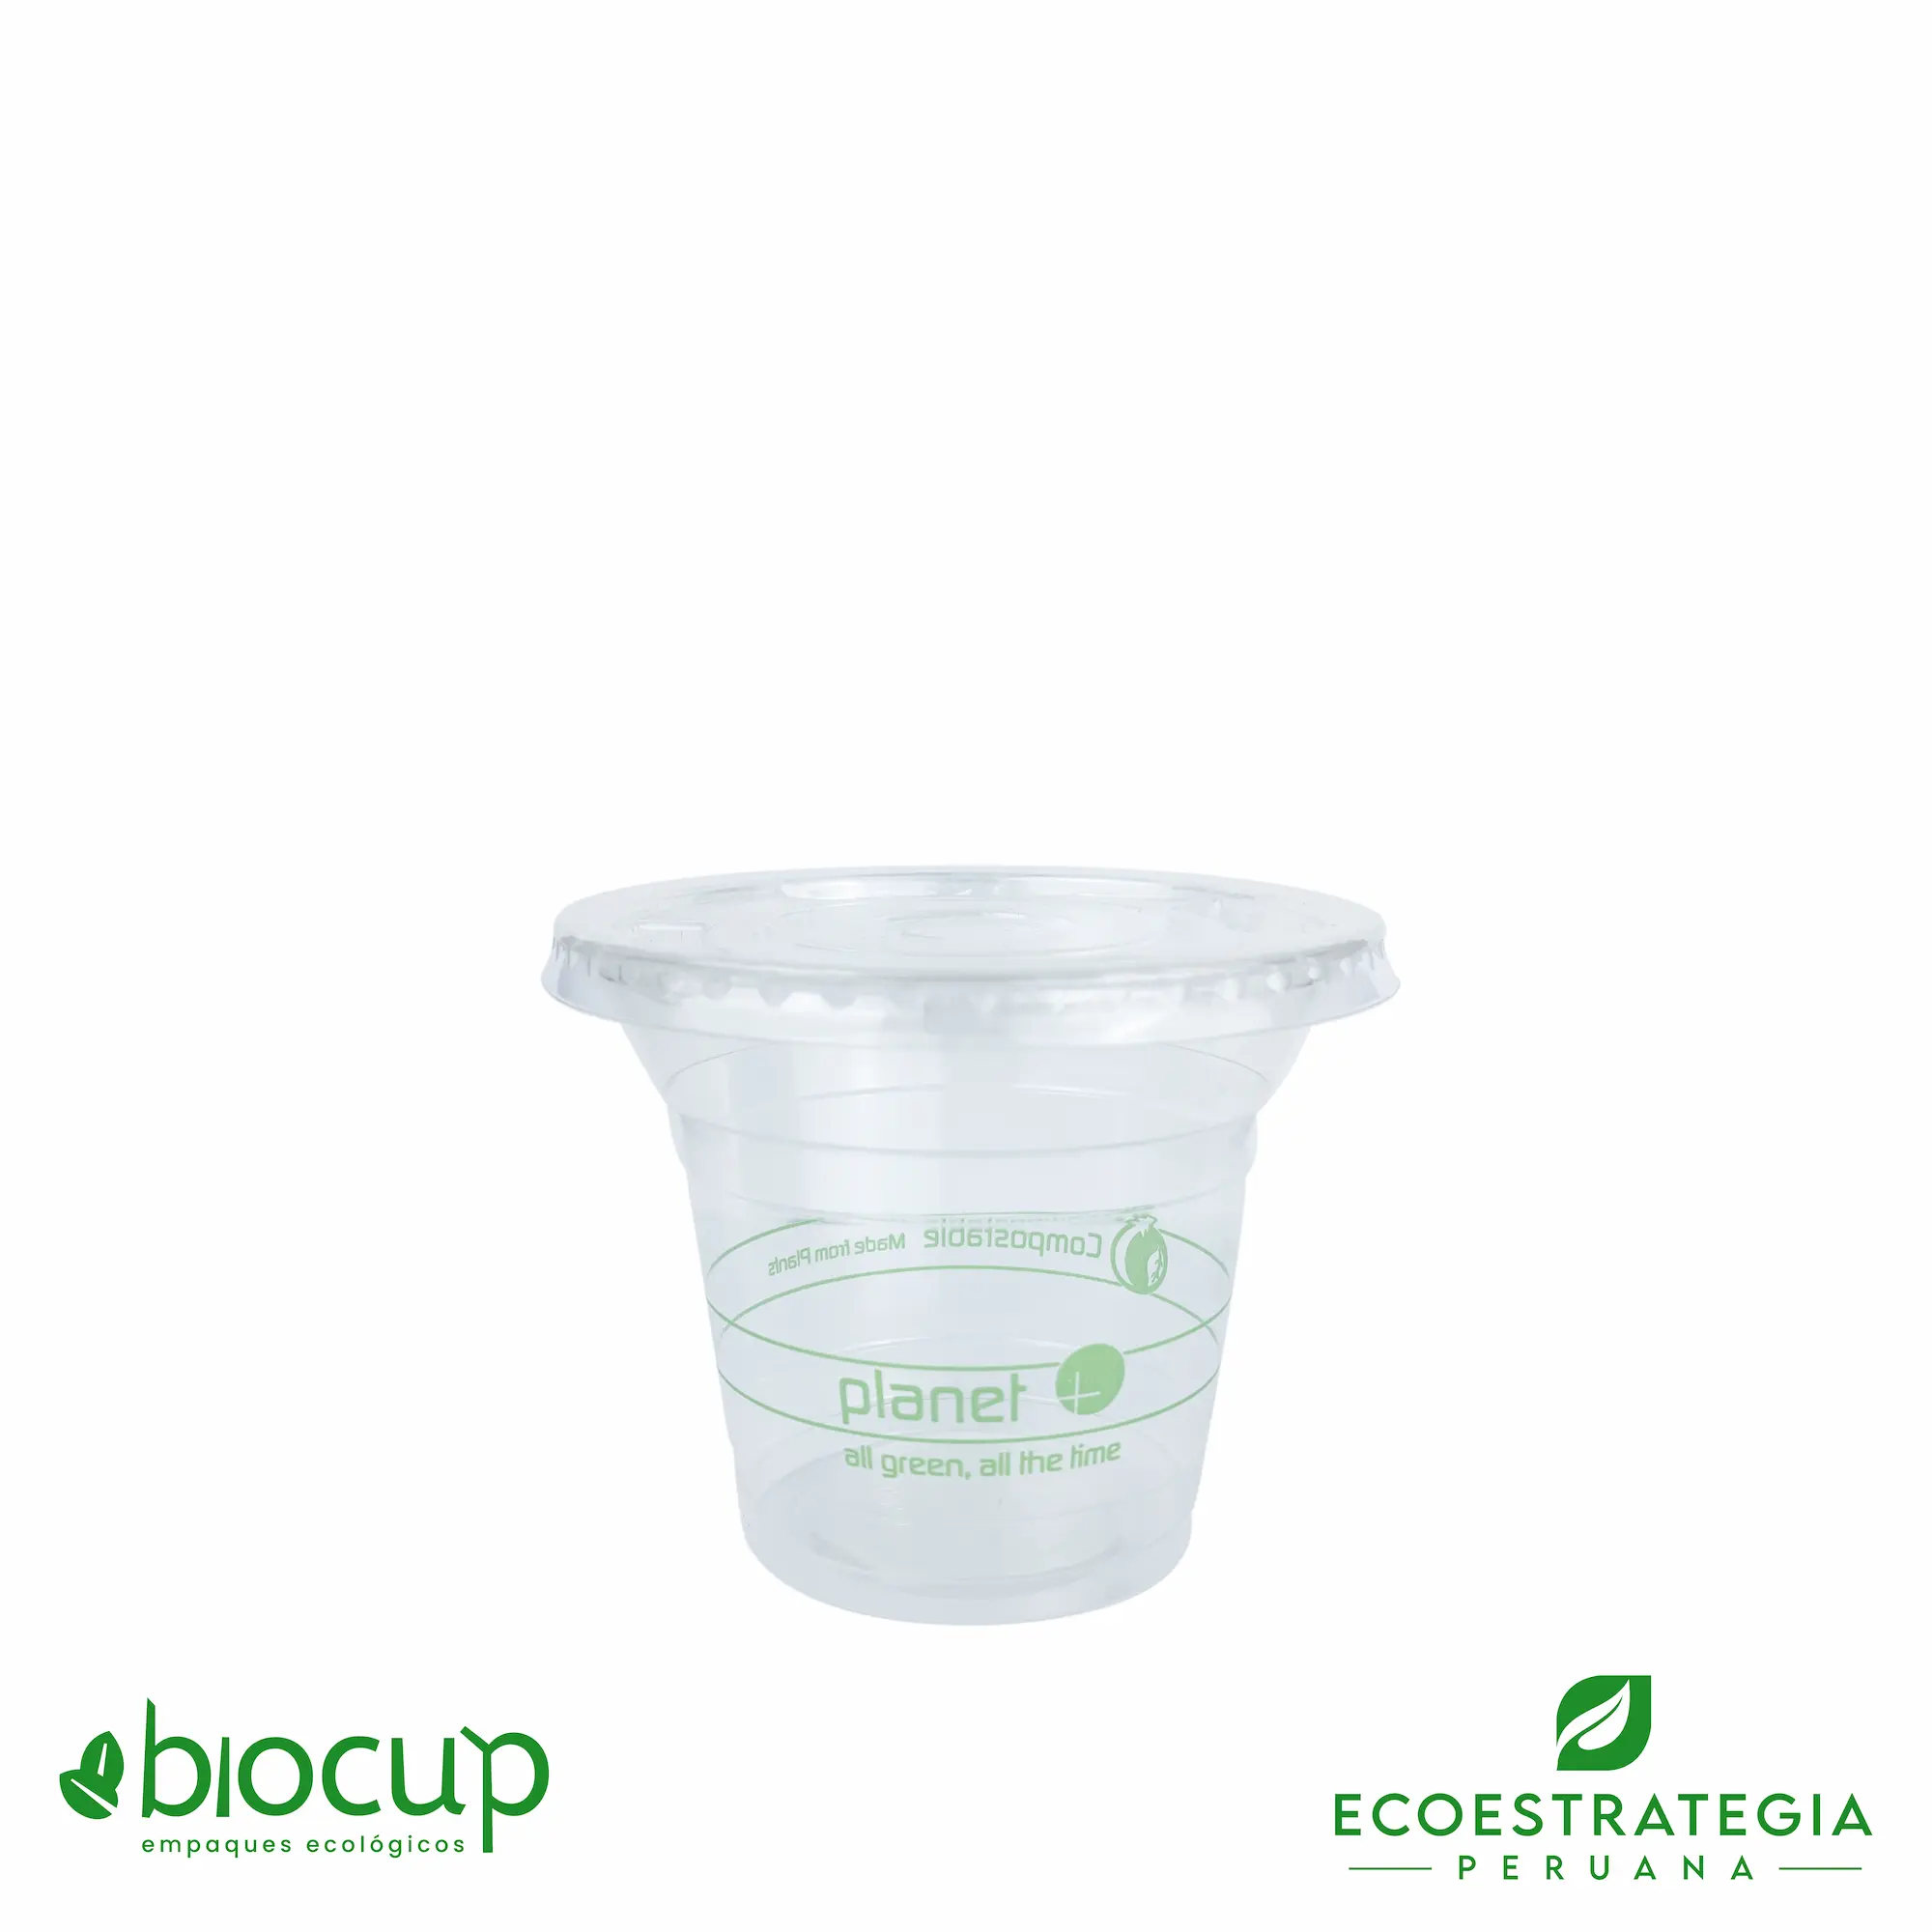 El envase para bebidas frias de 9oz EPLA-9 es también conocido como, Vaso biodegradable 9 oz, vaso biodegradable fécula de maíz, vasos biodegradables Perú,  vasos y sorbetes hechos de fécula de maíz, vasos eco amigables, vasos compostables para bebidas frías, vasos biodegradables transparentes, vaso pla transparente, vasos para frío, vasos 9 oz biodegradables pla, vaso, vasos domo, vasos fécula de arroz, vasos pet, vasos polipapel, vasos biodegradables material, vasos biodegradables precio, vasos biodegradables al por mayor, vasos biodegradables personalizado, vasos biodegradables con tapa, vasos biodegradables, vaso biodegradable, vasos biodegradables peru, vasos biodegradables lima, vasos biodegradables cuzco, vasos biodegrables arequipa